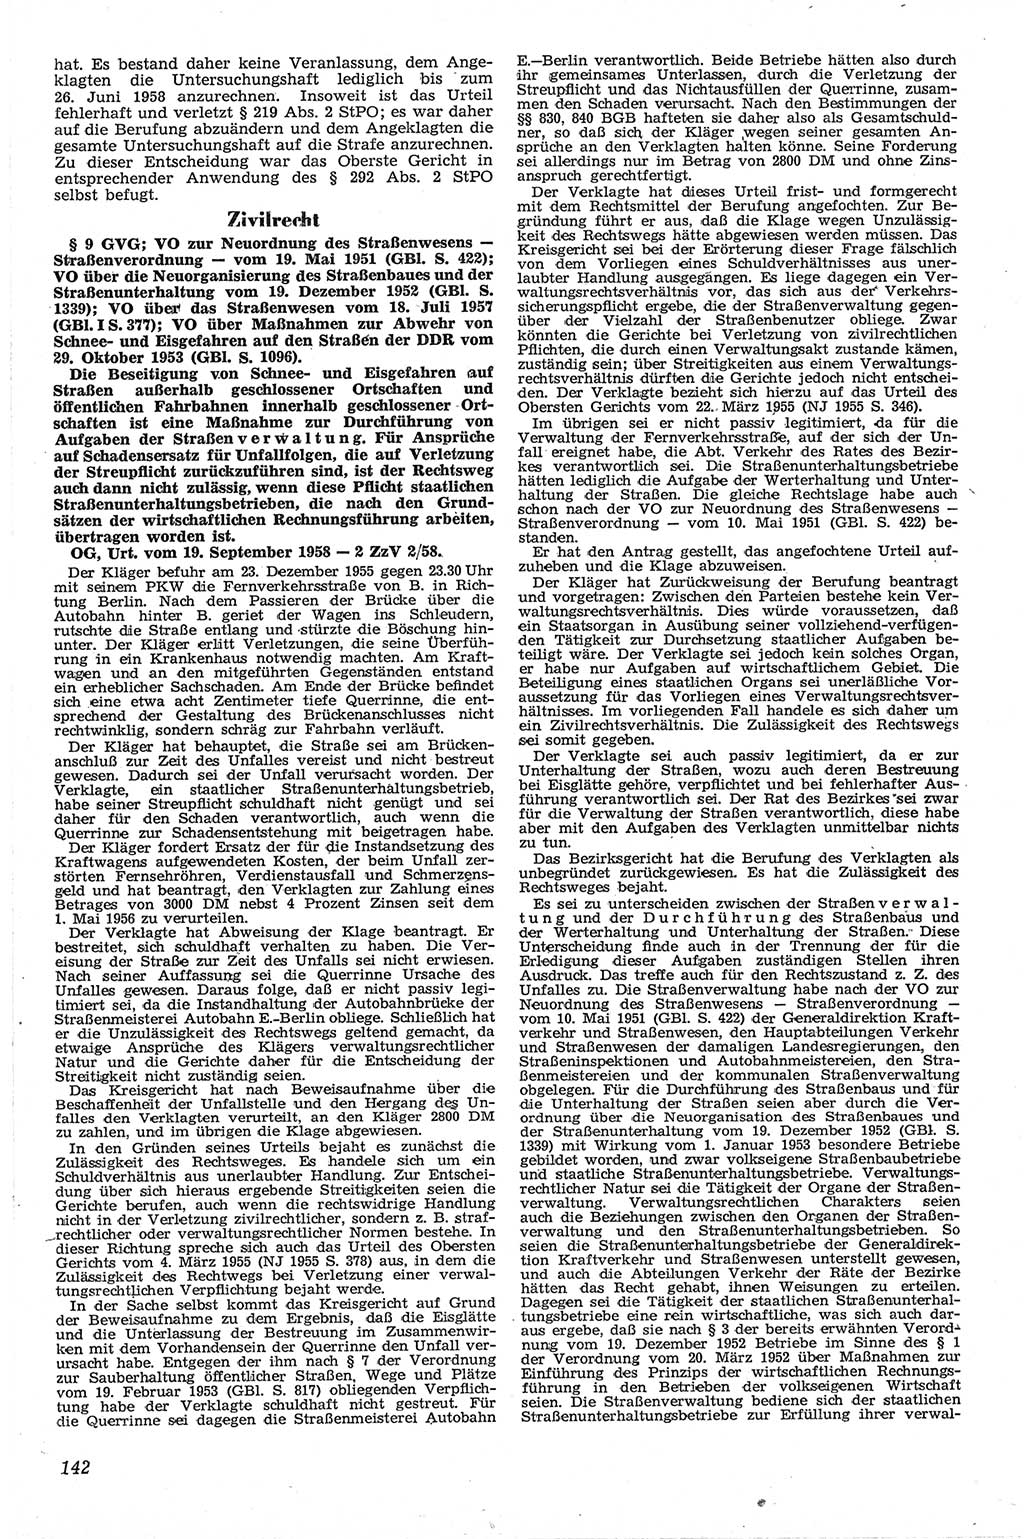 Neue Justiz (NJ), Zeitschrift für Recht und Rechtswissenschaft [Deutsche Demokratische Republik (DDR)], 13. Jahrgang 1959, Seite 142 (NJ DDR 1959, S. 142)